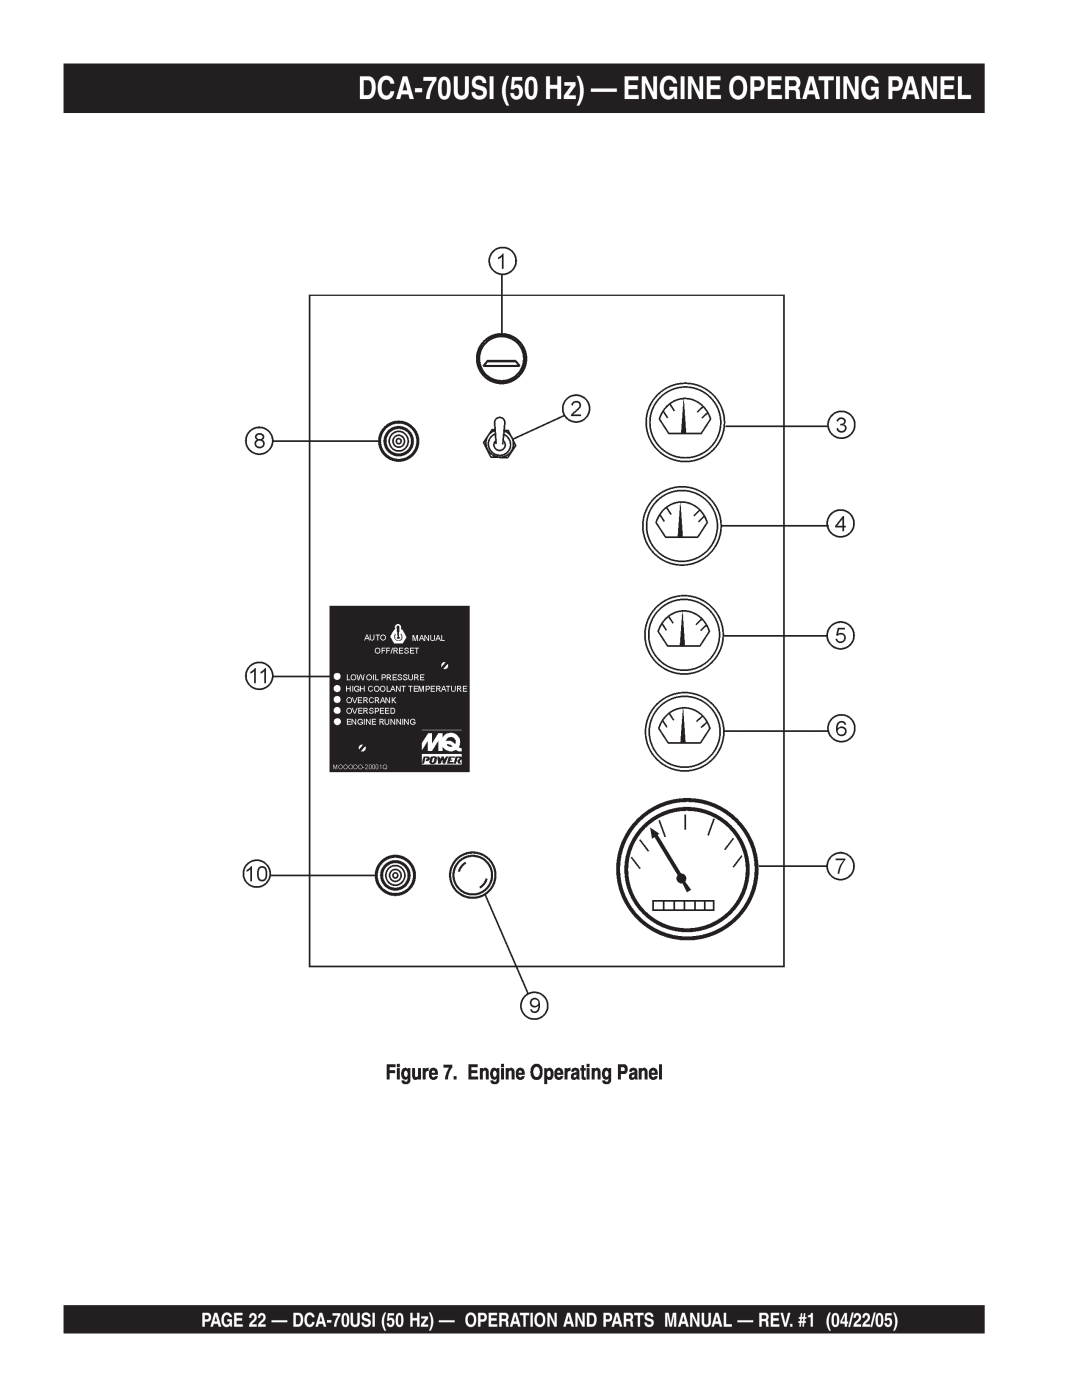 Multiquip operation manual DCA-70USI50 Hz — ENGINE OPERATING PANEL, Engine Operating Panel 